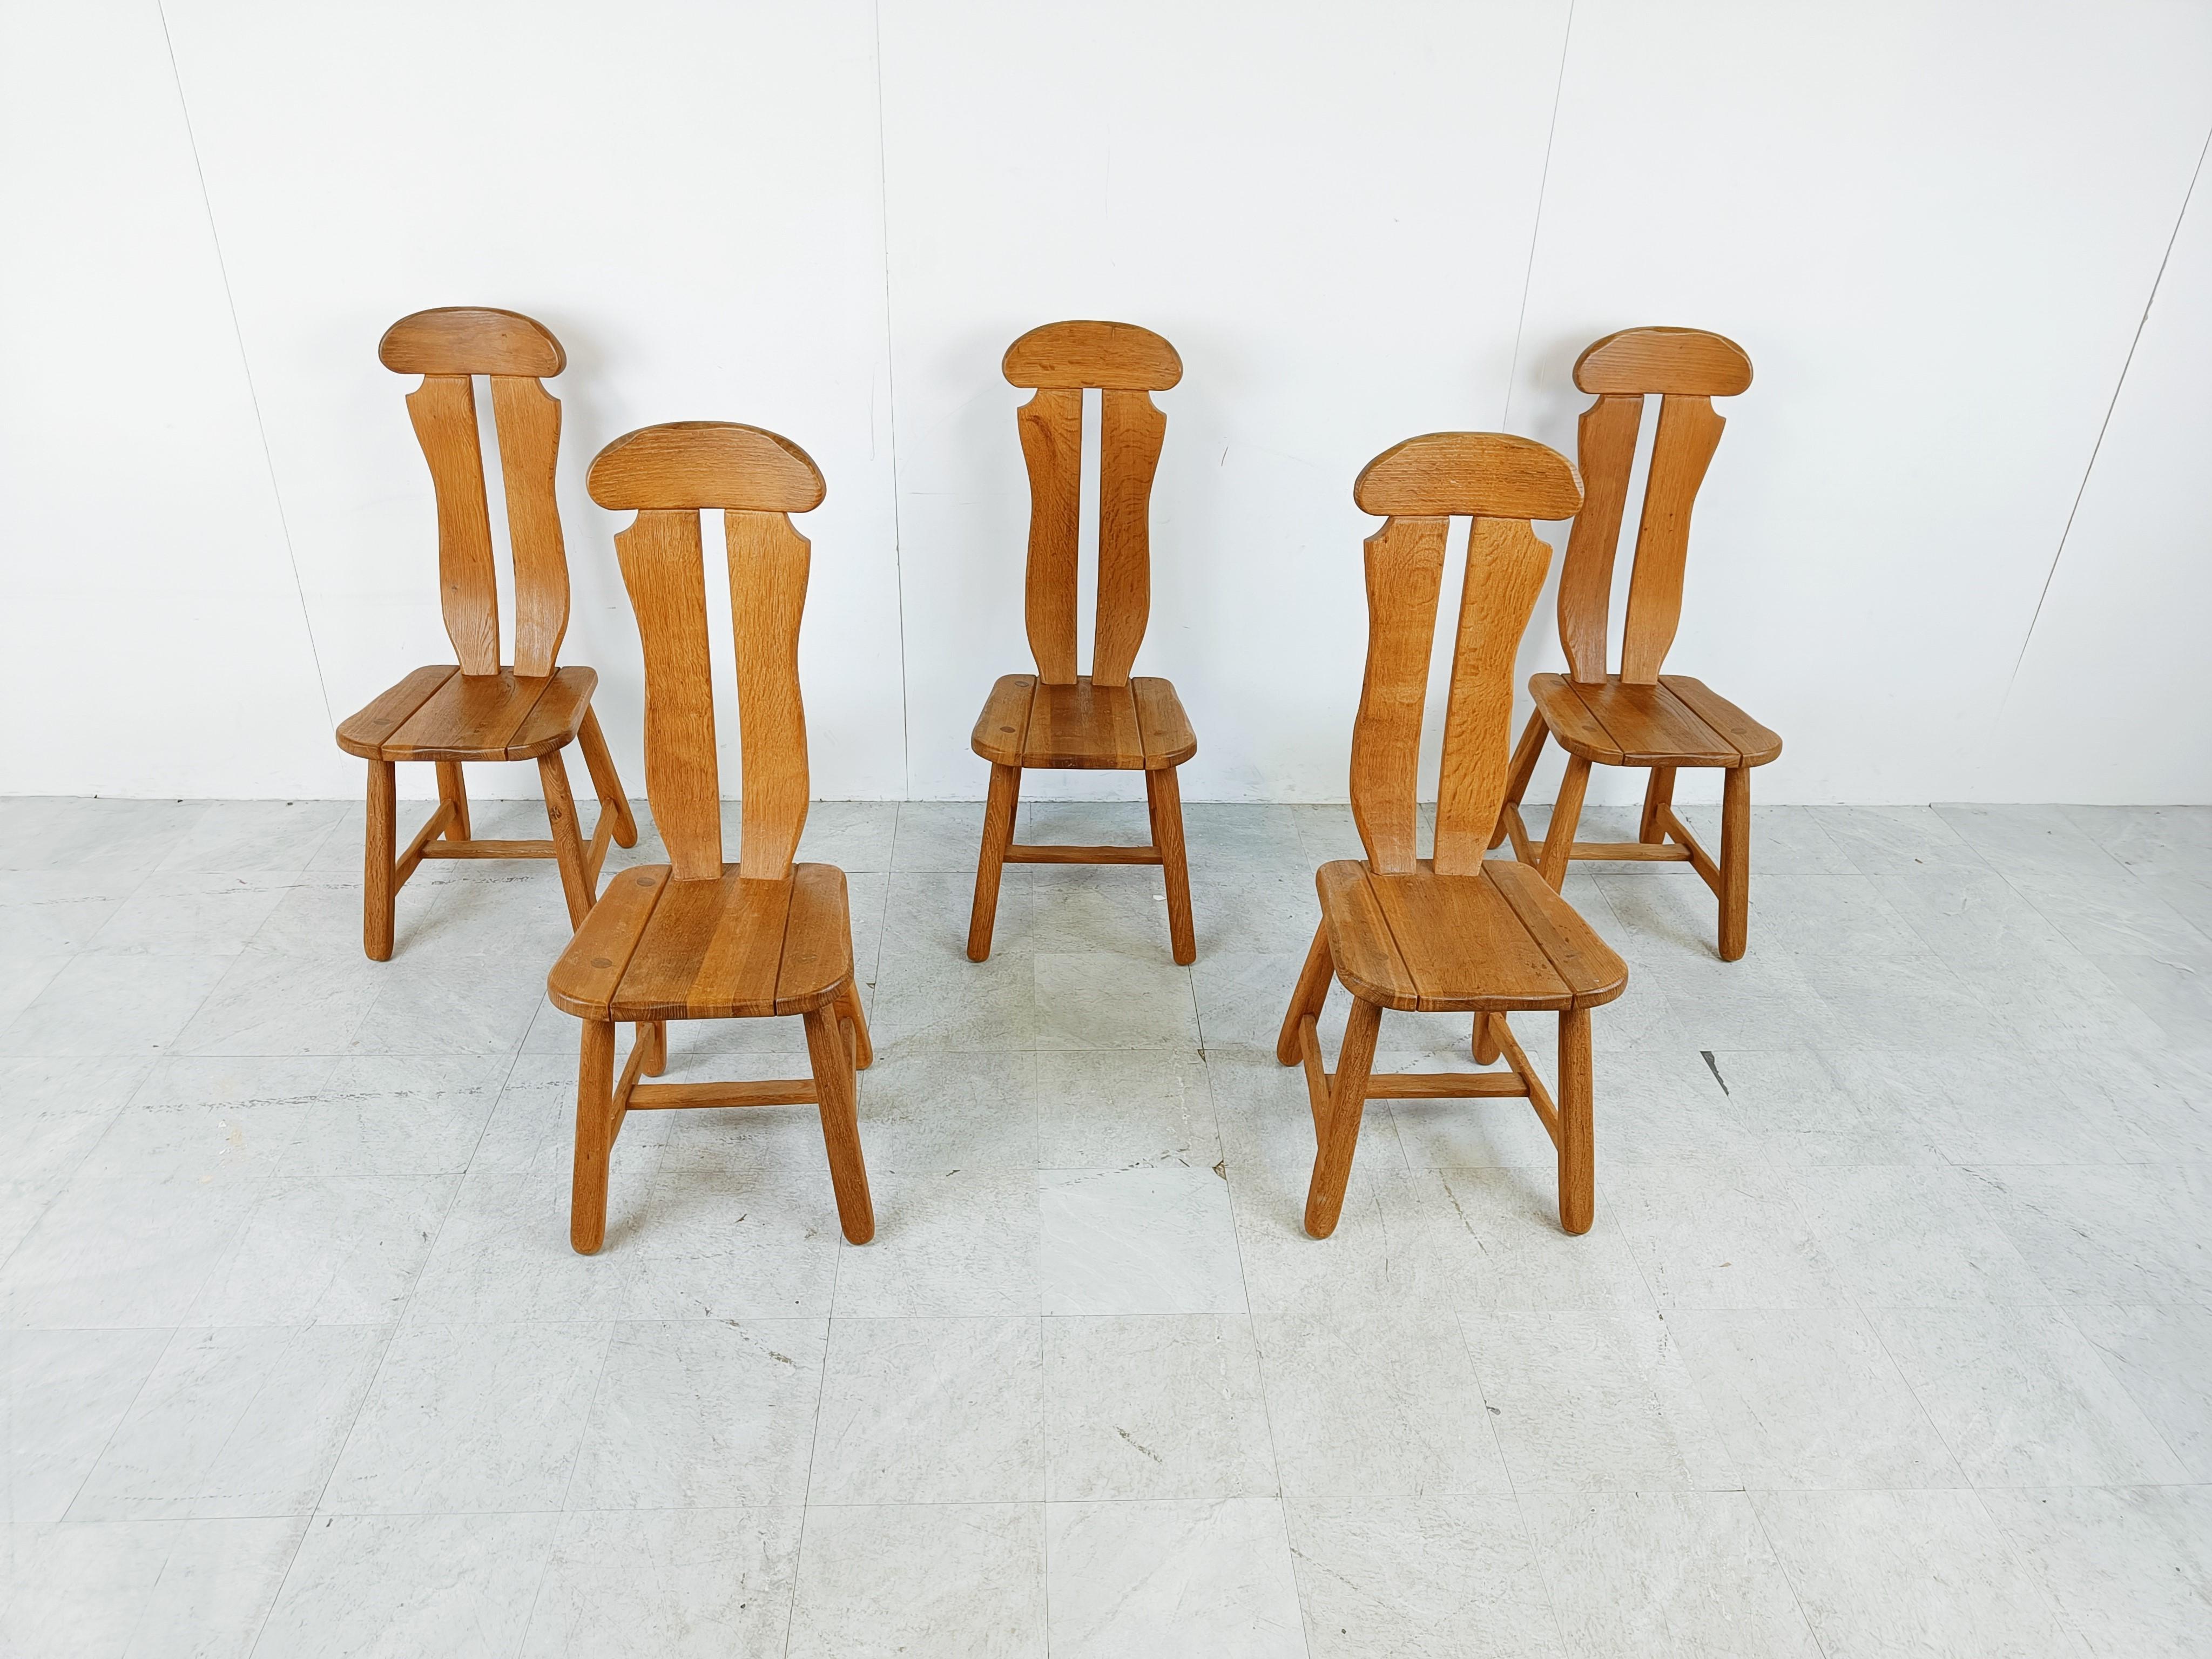 Chaises de salle à manger robustes et fabriquées à la main par Depuydt Kunstmeubelen en Belgique.

Les chaises sont fabriquées en chêne massif.

Magnifique dos fendu avec des pièces en bois qui s'emboîtent les unes dans les autres.

Ces chaises et